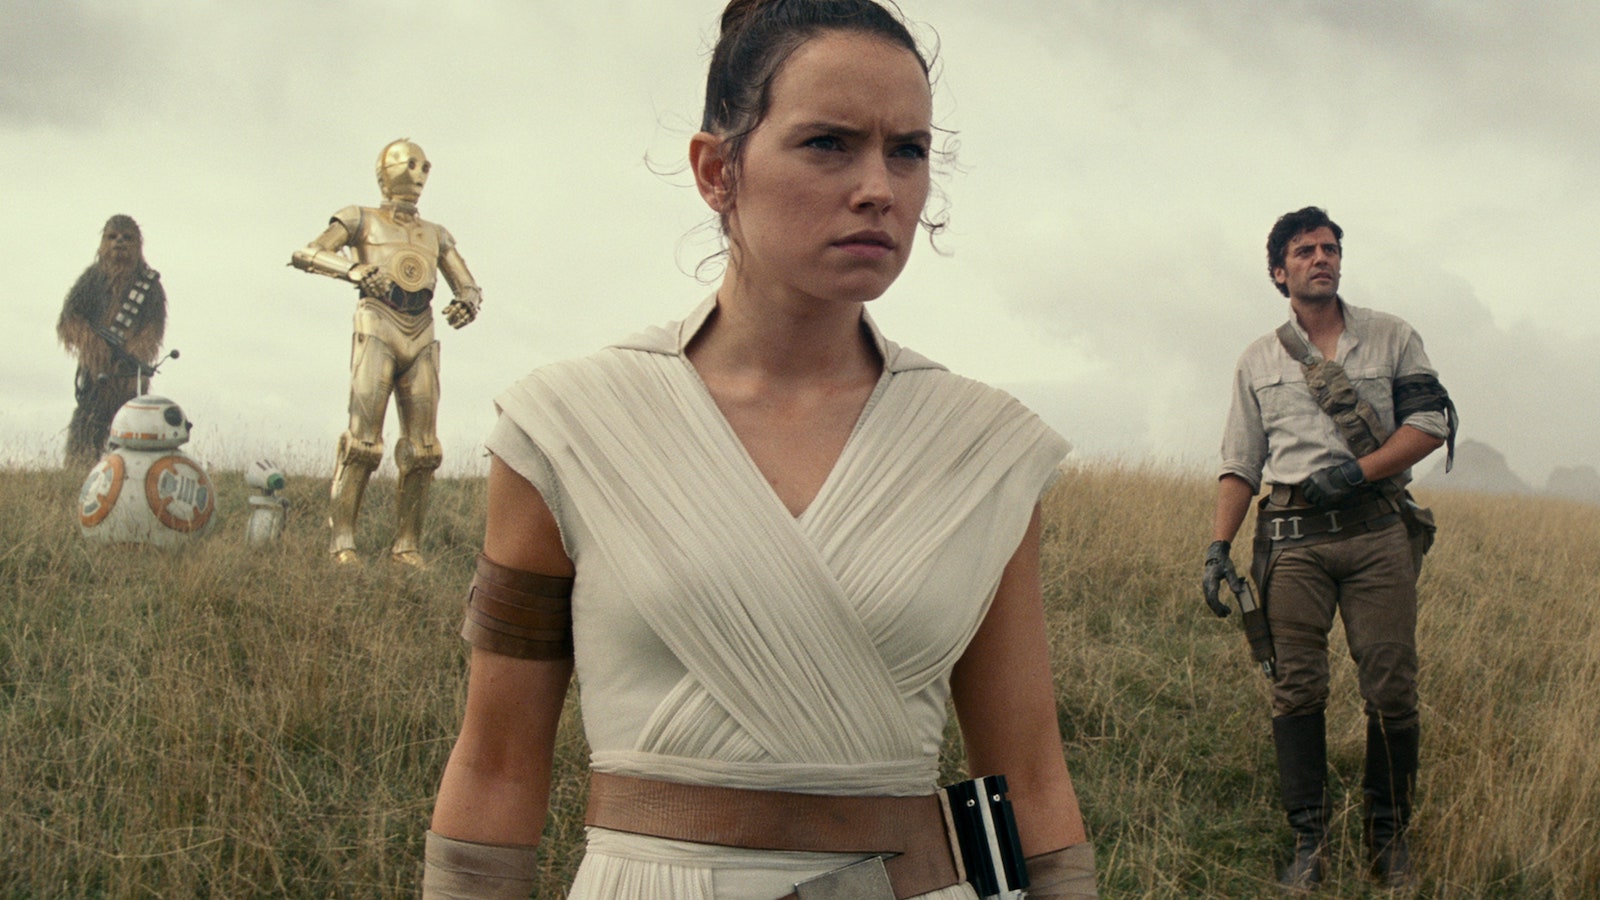 Star Wars, Daisy Ridley anticipa il nuovo film su Rey: 'Prenderemo una direzione diversa stavolta'